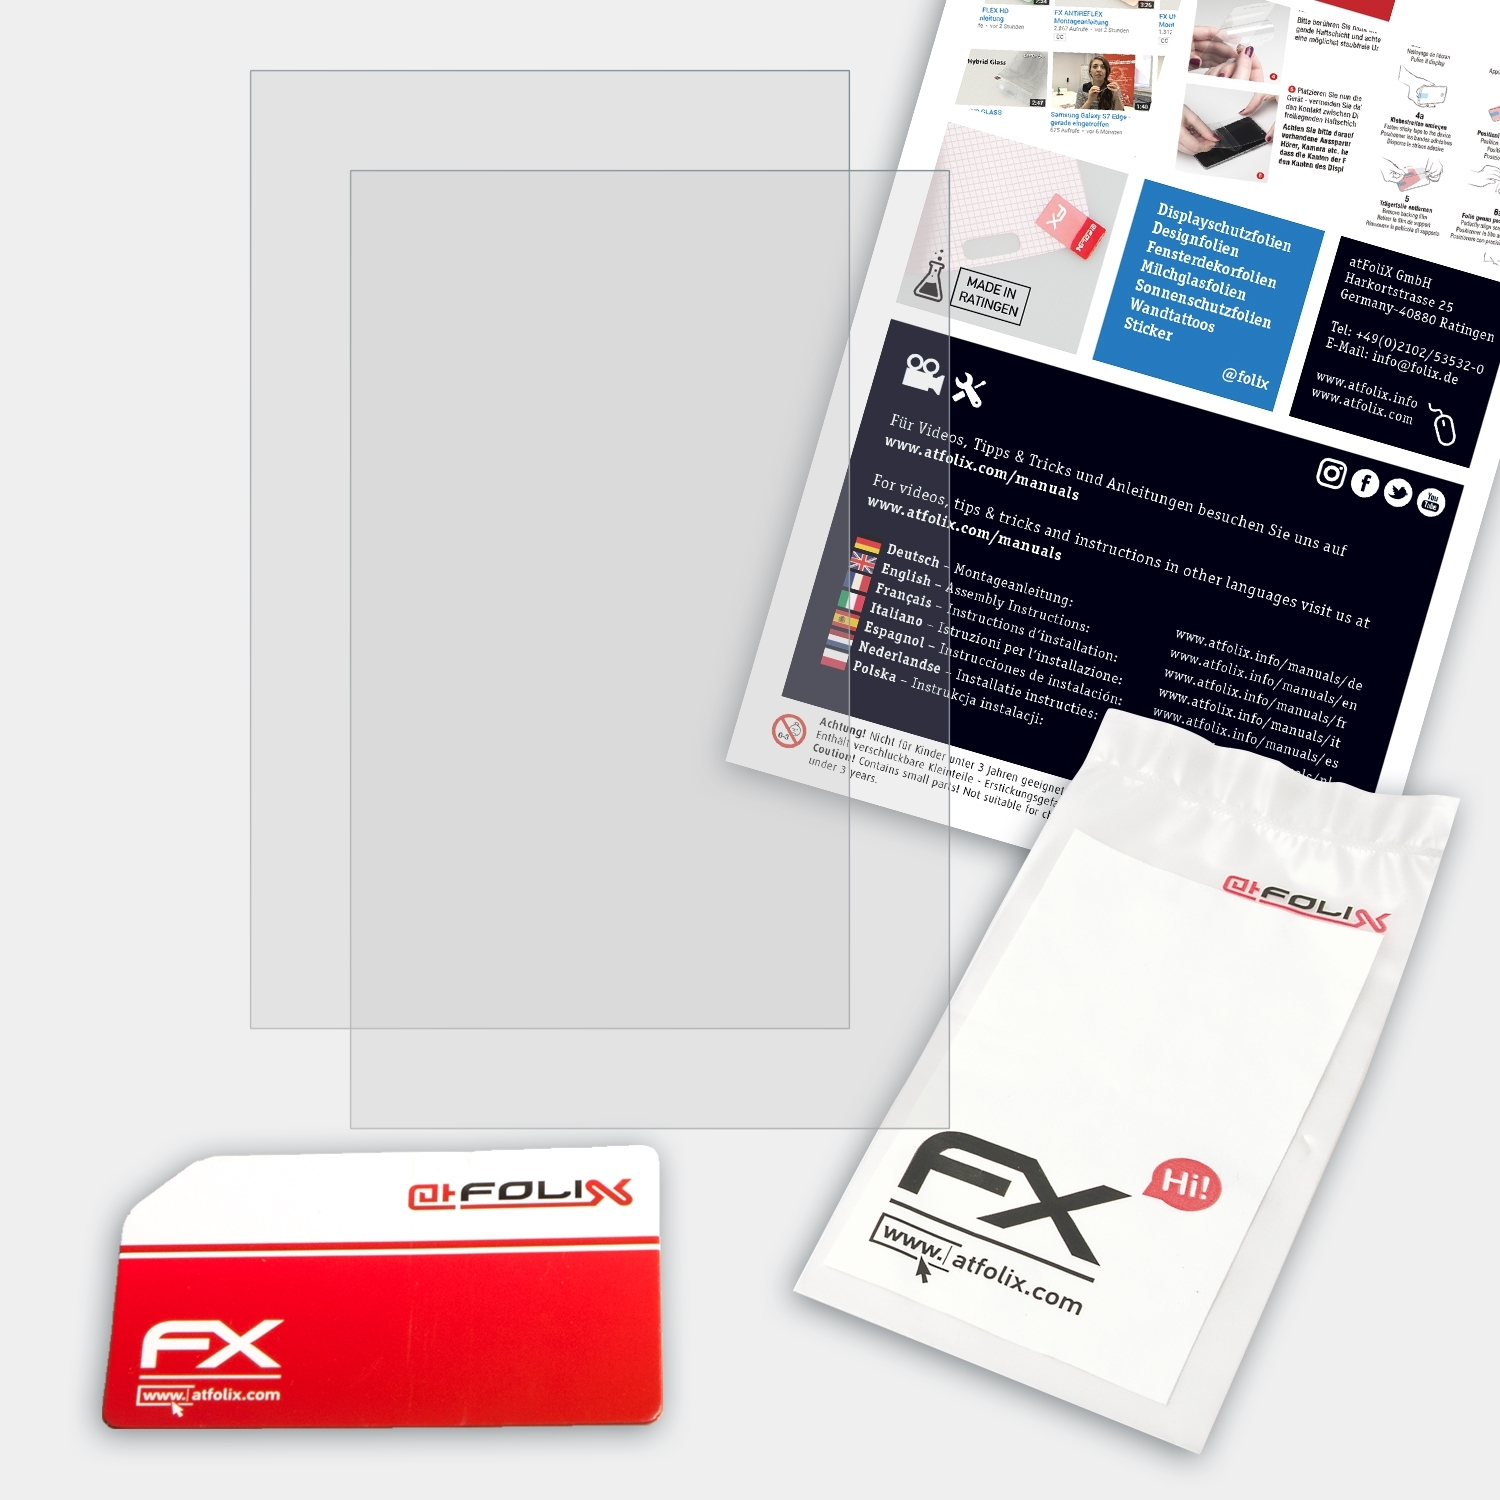 ATFOLIX 2x FX-Antireflex MSI Creator Displayschutz(für Z16)